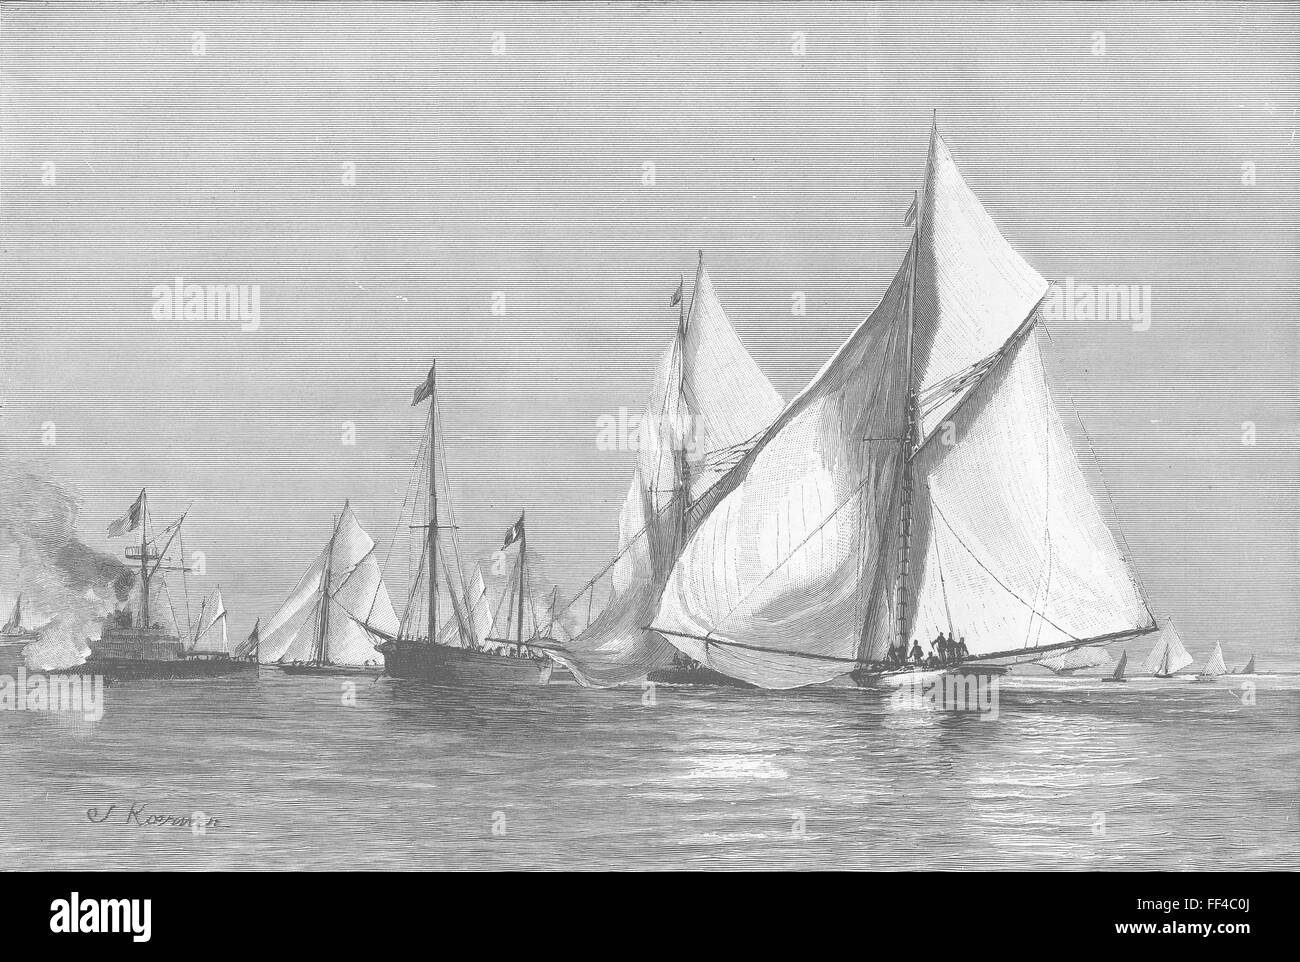 Frankreich Nizza Regatta-Yachten Rundung Richter Schiff 1892. Die Grafik Stockfoto